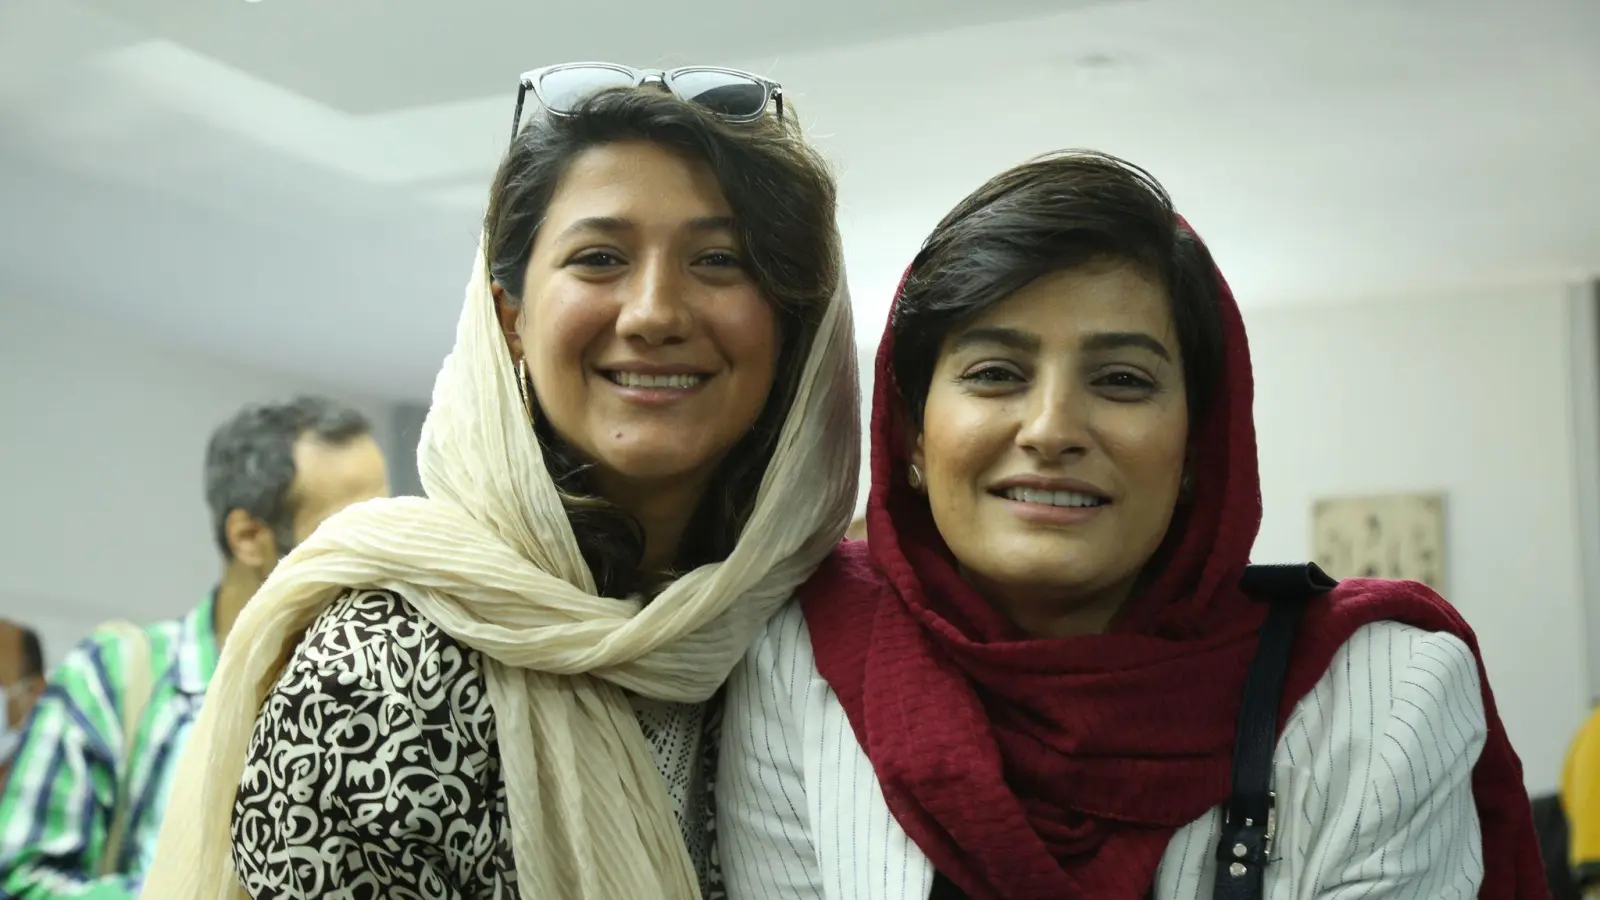 Die Journalistinnen Nilufar Hamedi (l) und Elaheh Mohammadi (r). (Foto: Mehrdad Aladin/dpa)